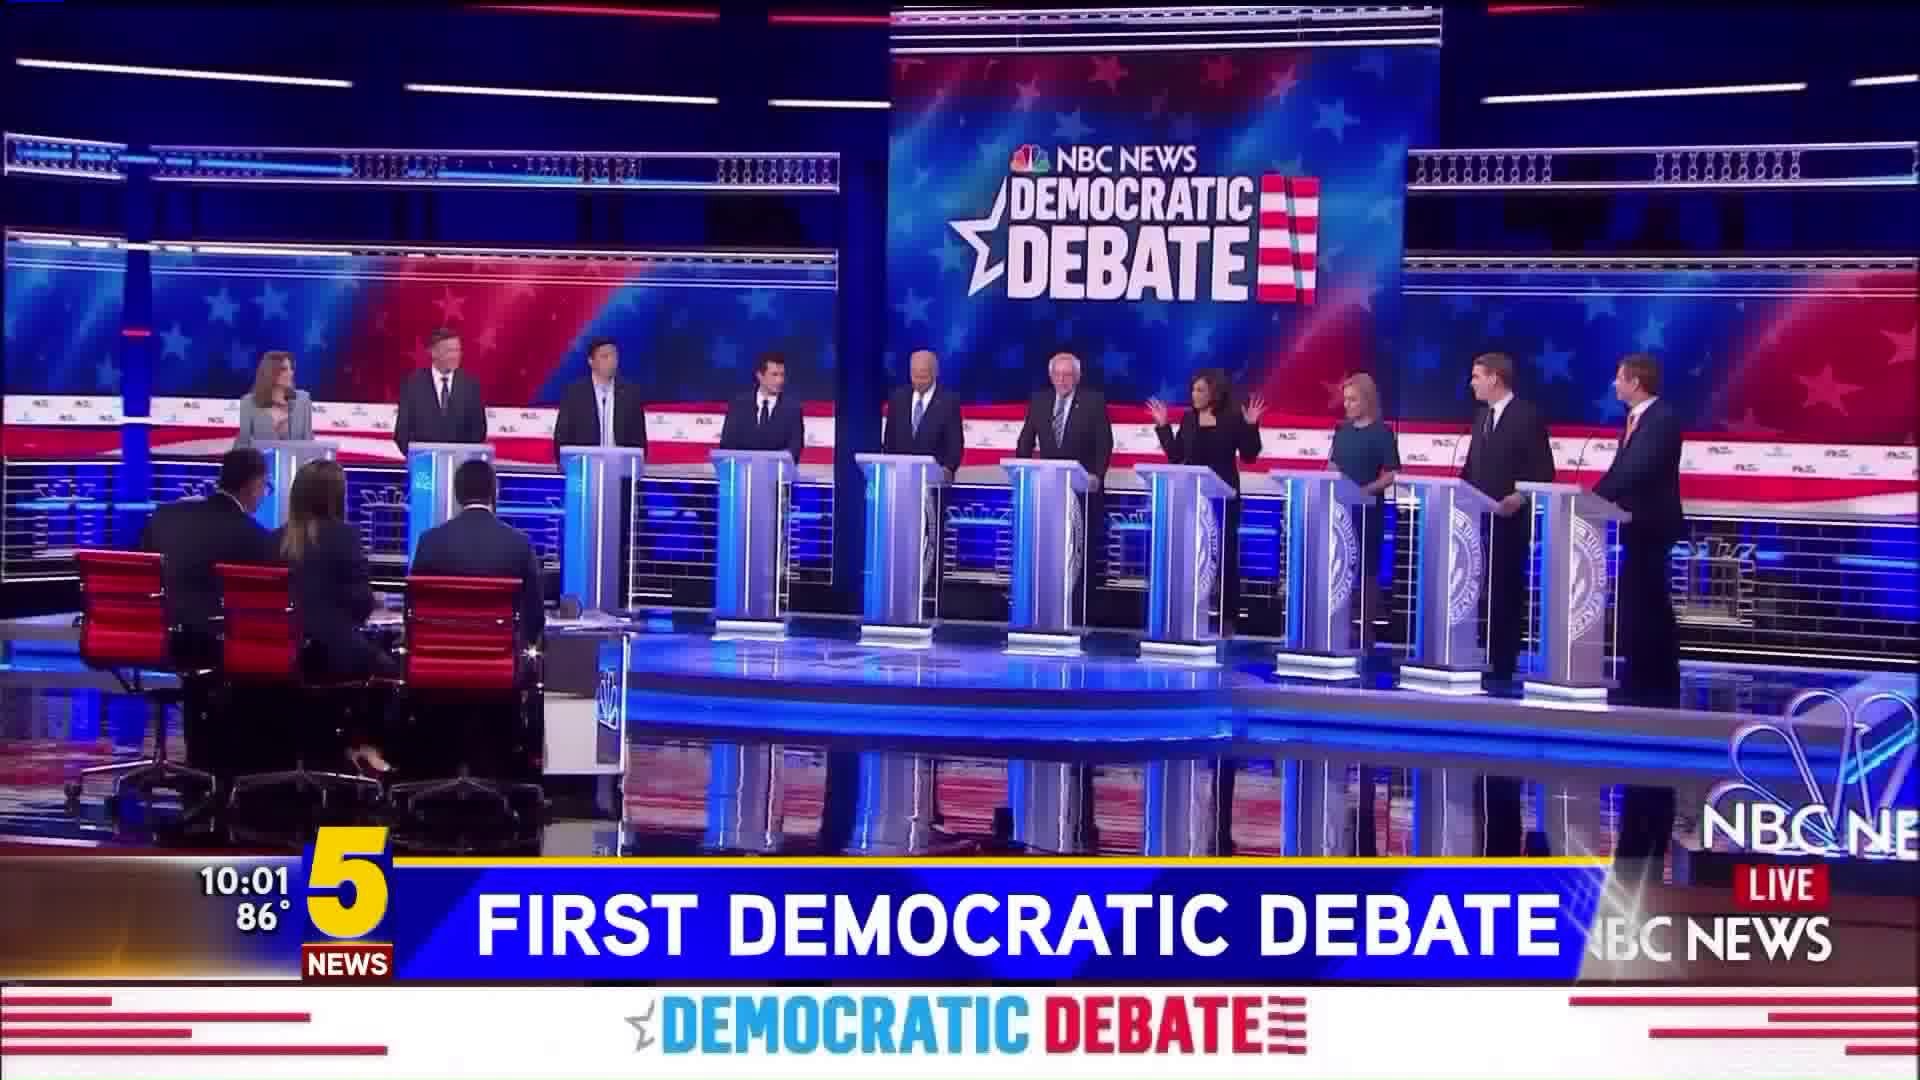 Democratic Debate Night 2